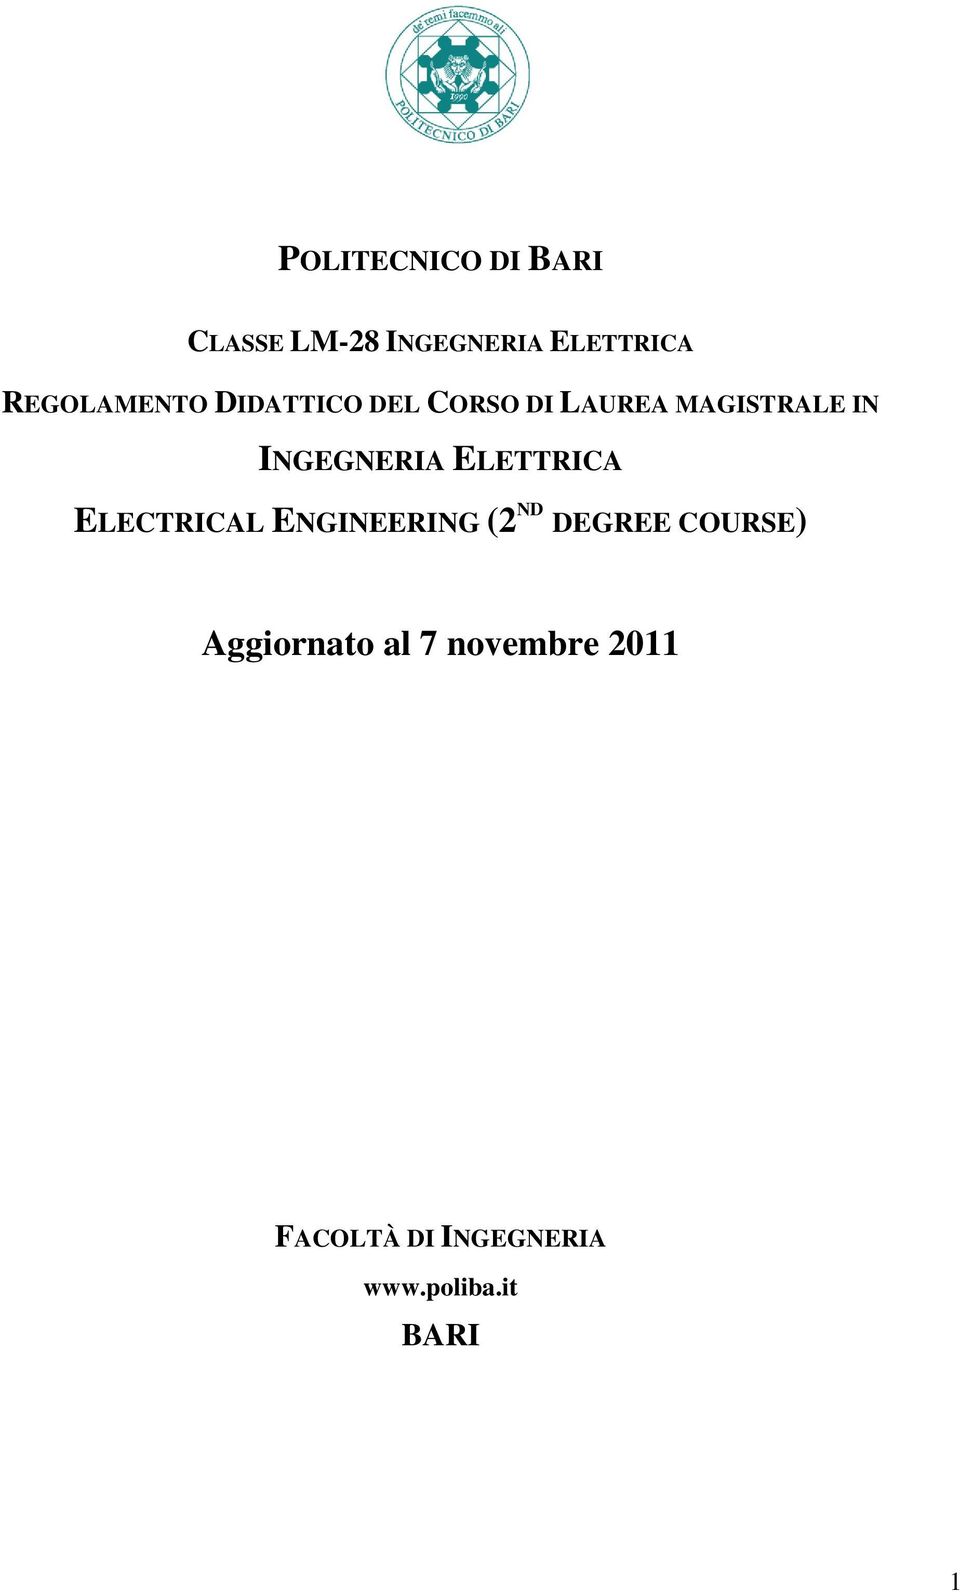 INGEGNERIA ELETTRICA ELECTRICAL ENGINEERING (2 ND DEGREE